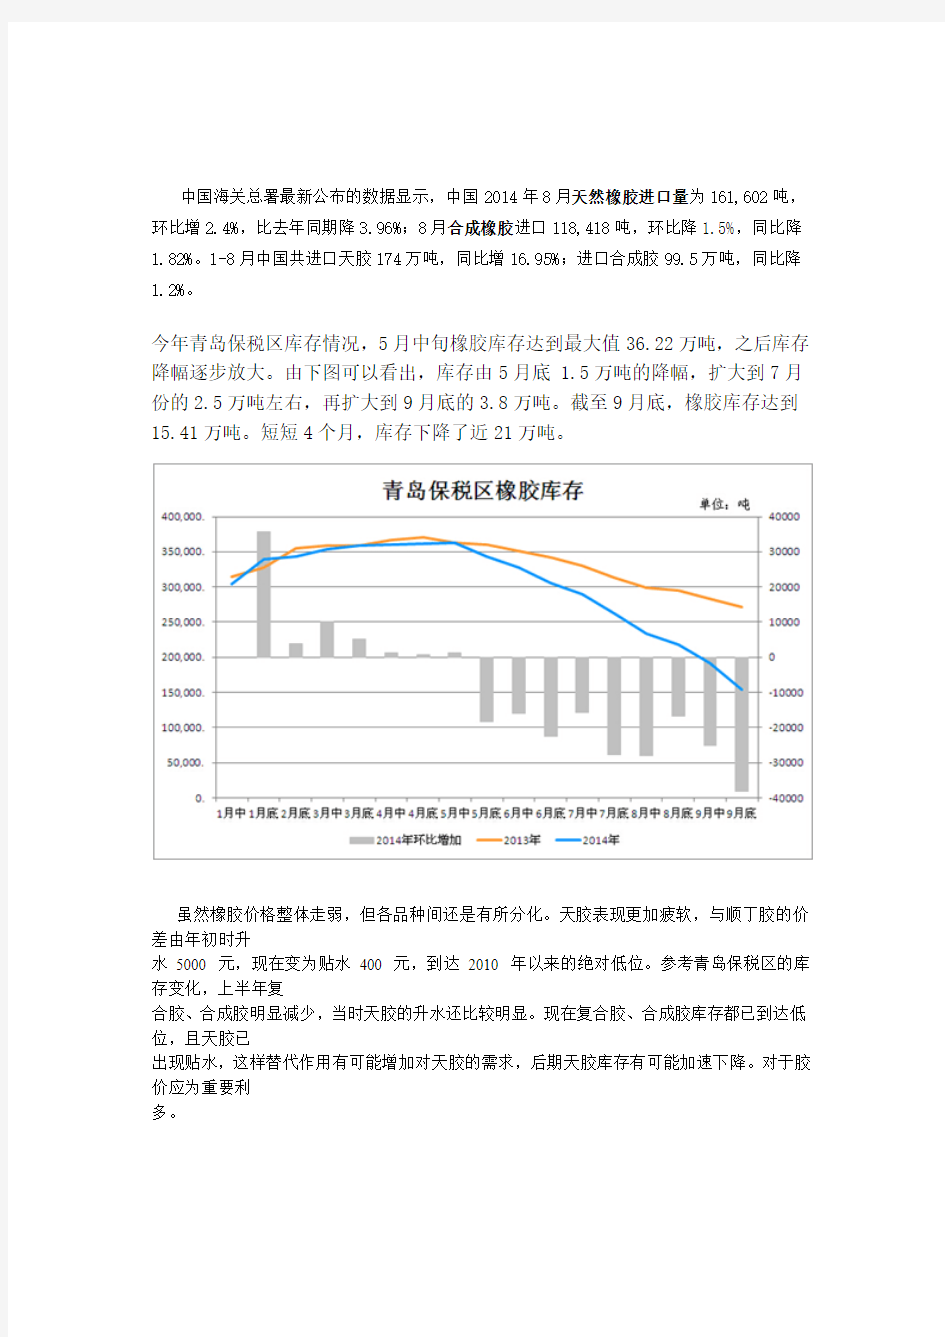 中国海关总署最新公布的数据显示